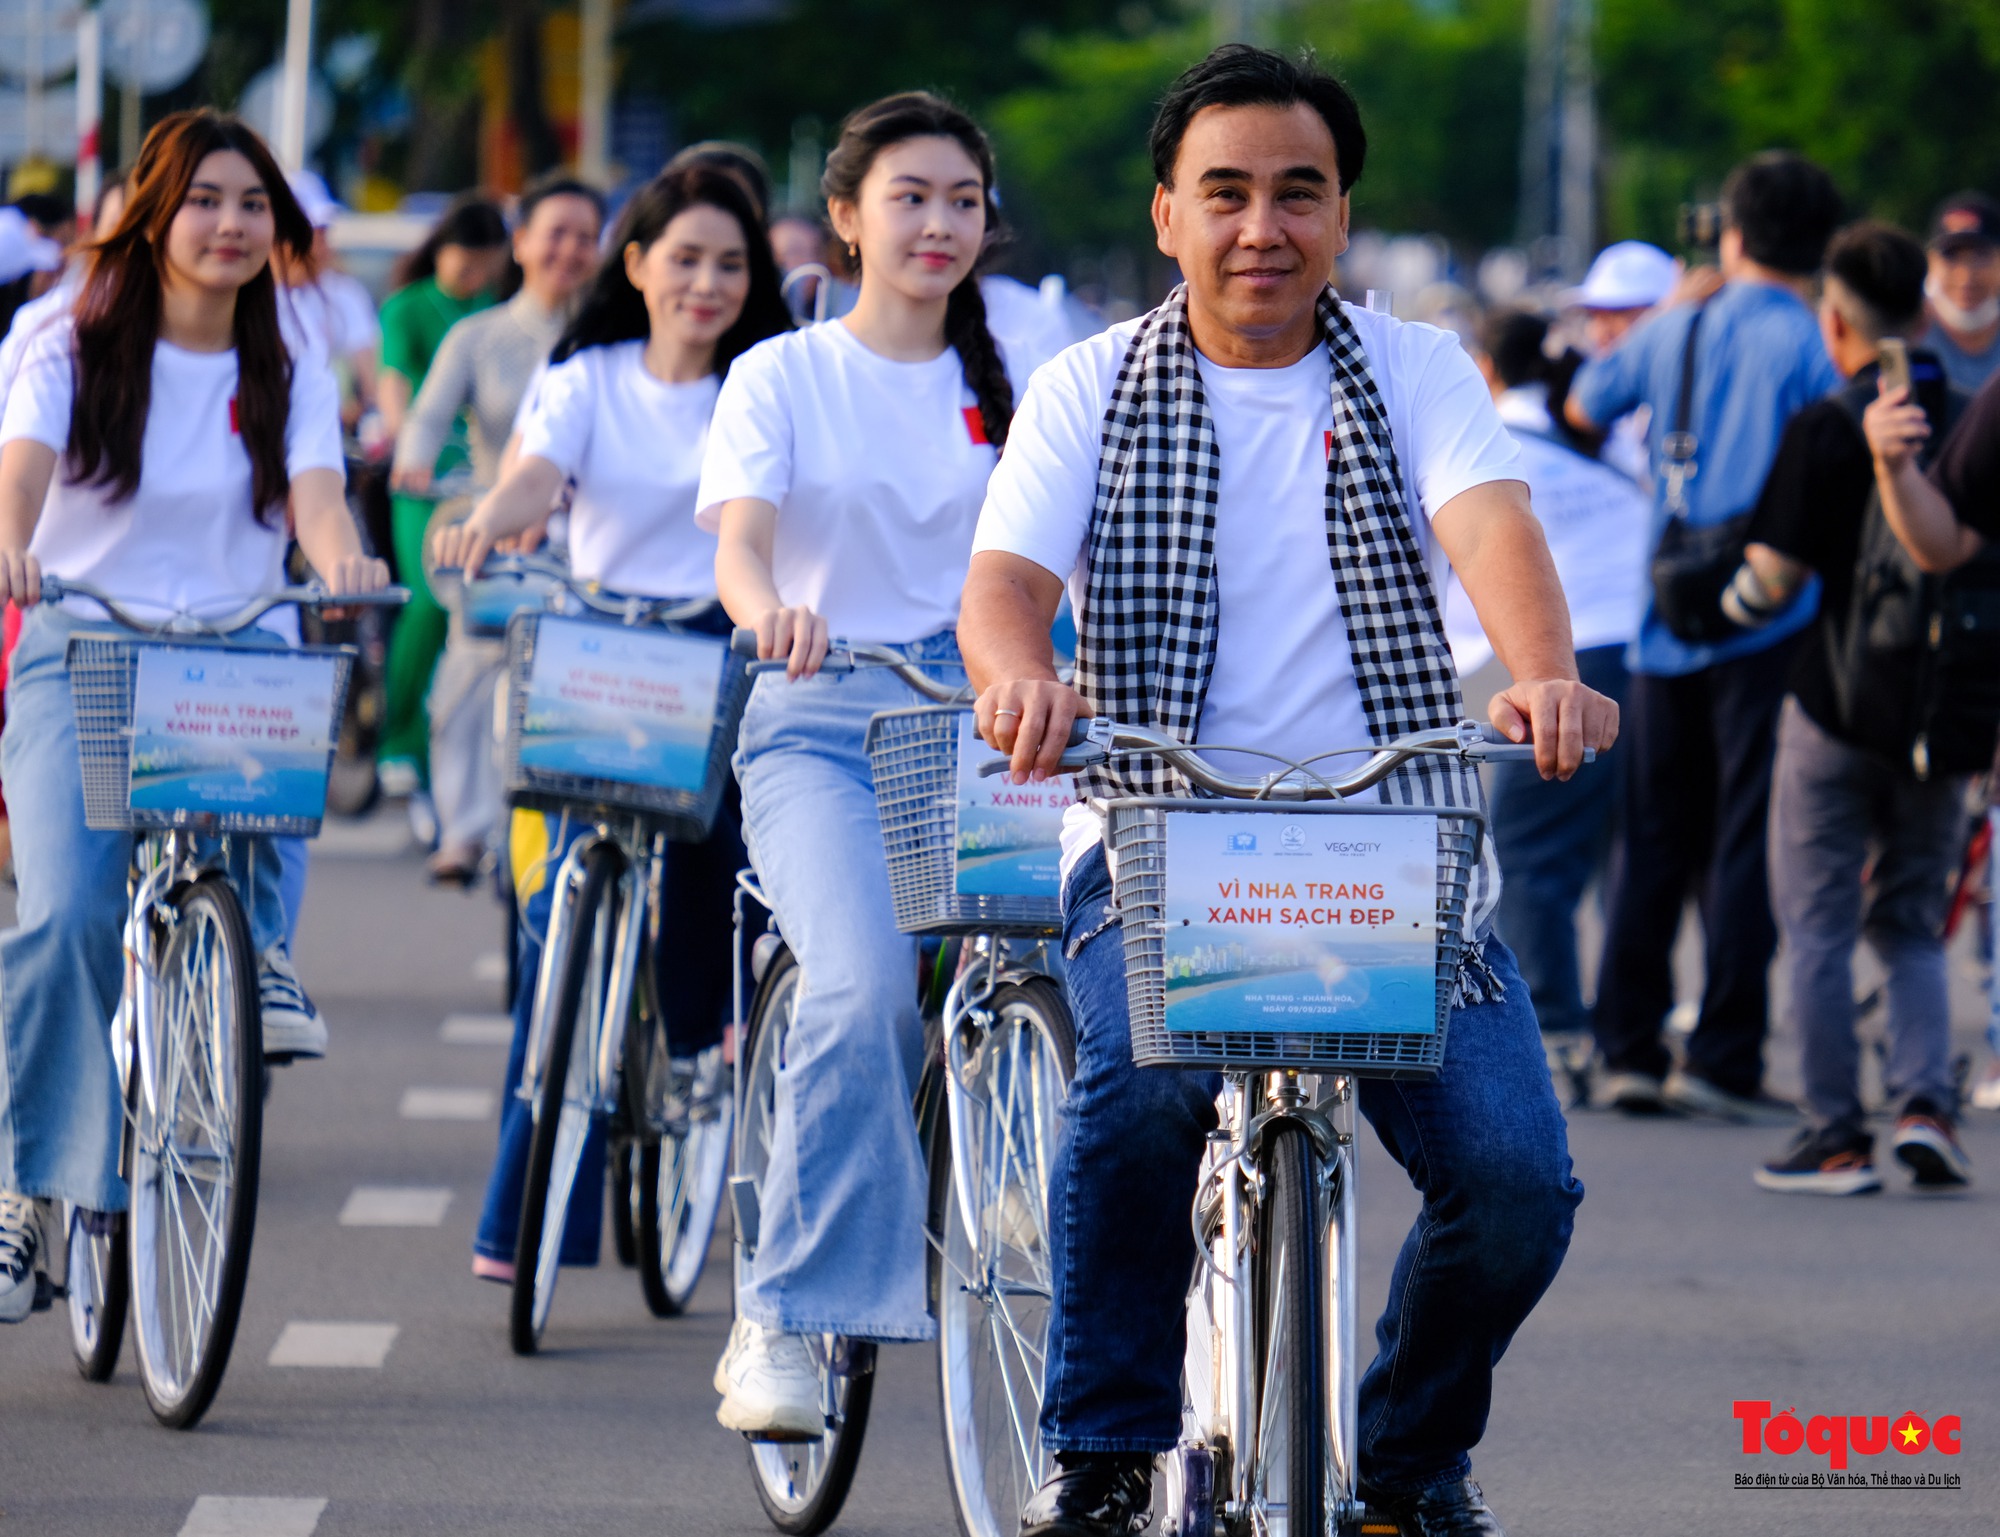 Nha Trang: Hàng trăm nghệ sĩ tham gia lễ chào cờ và đạp xe vì môi trường tại quảng trường 2/4 - Ảnh 10.